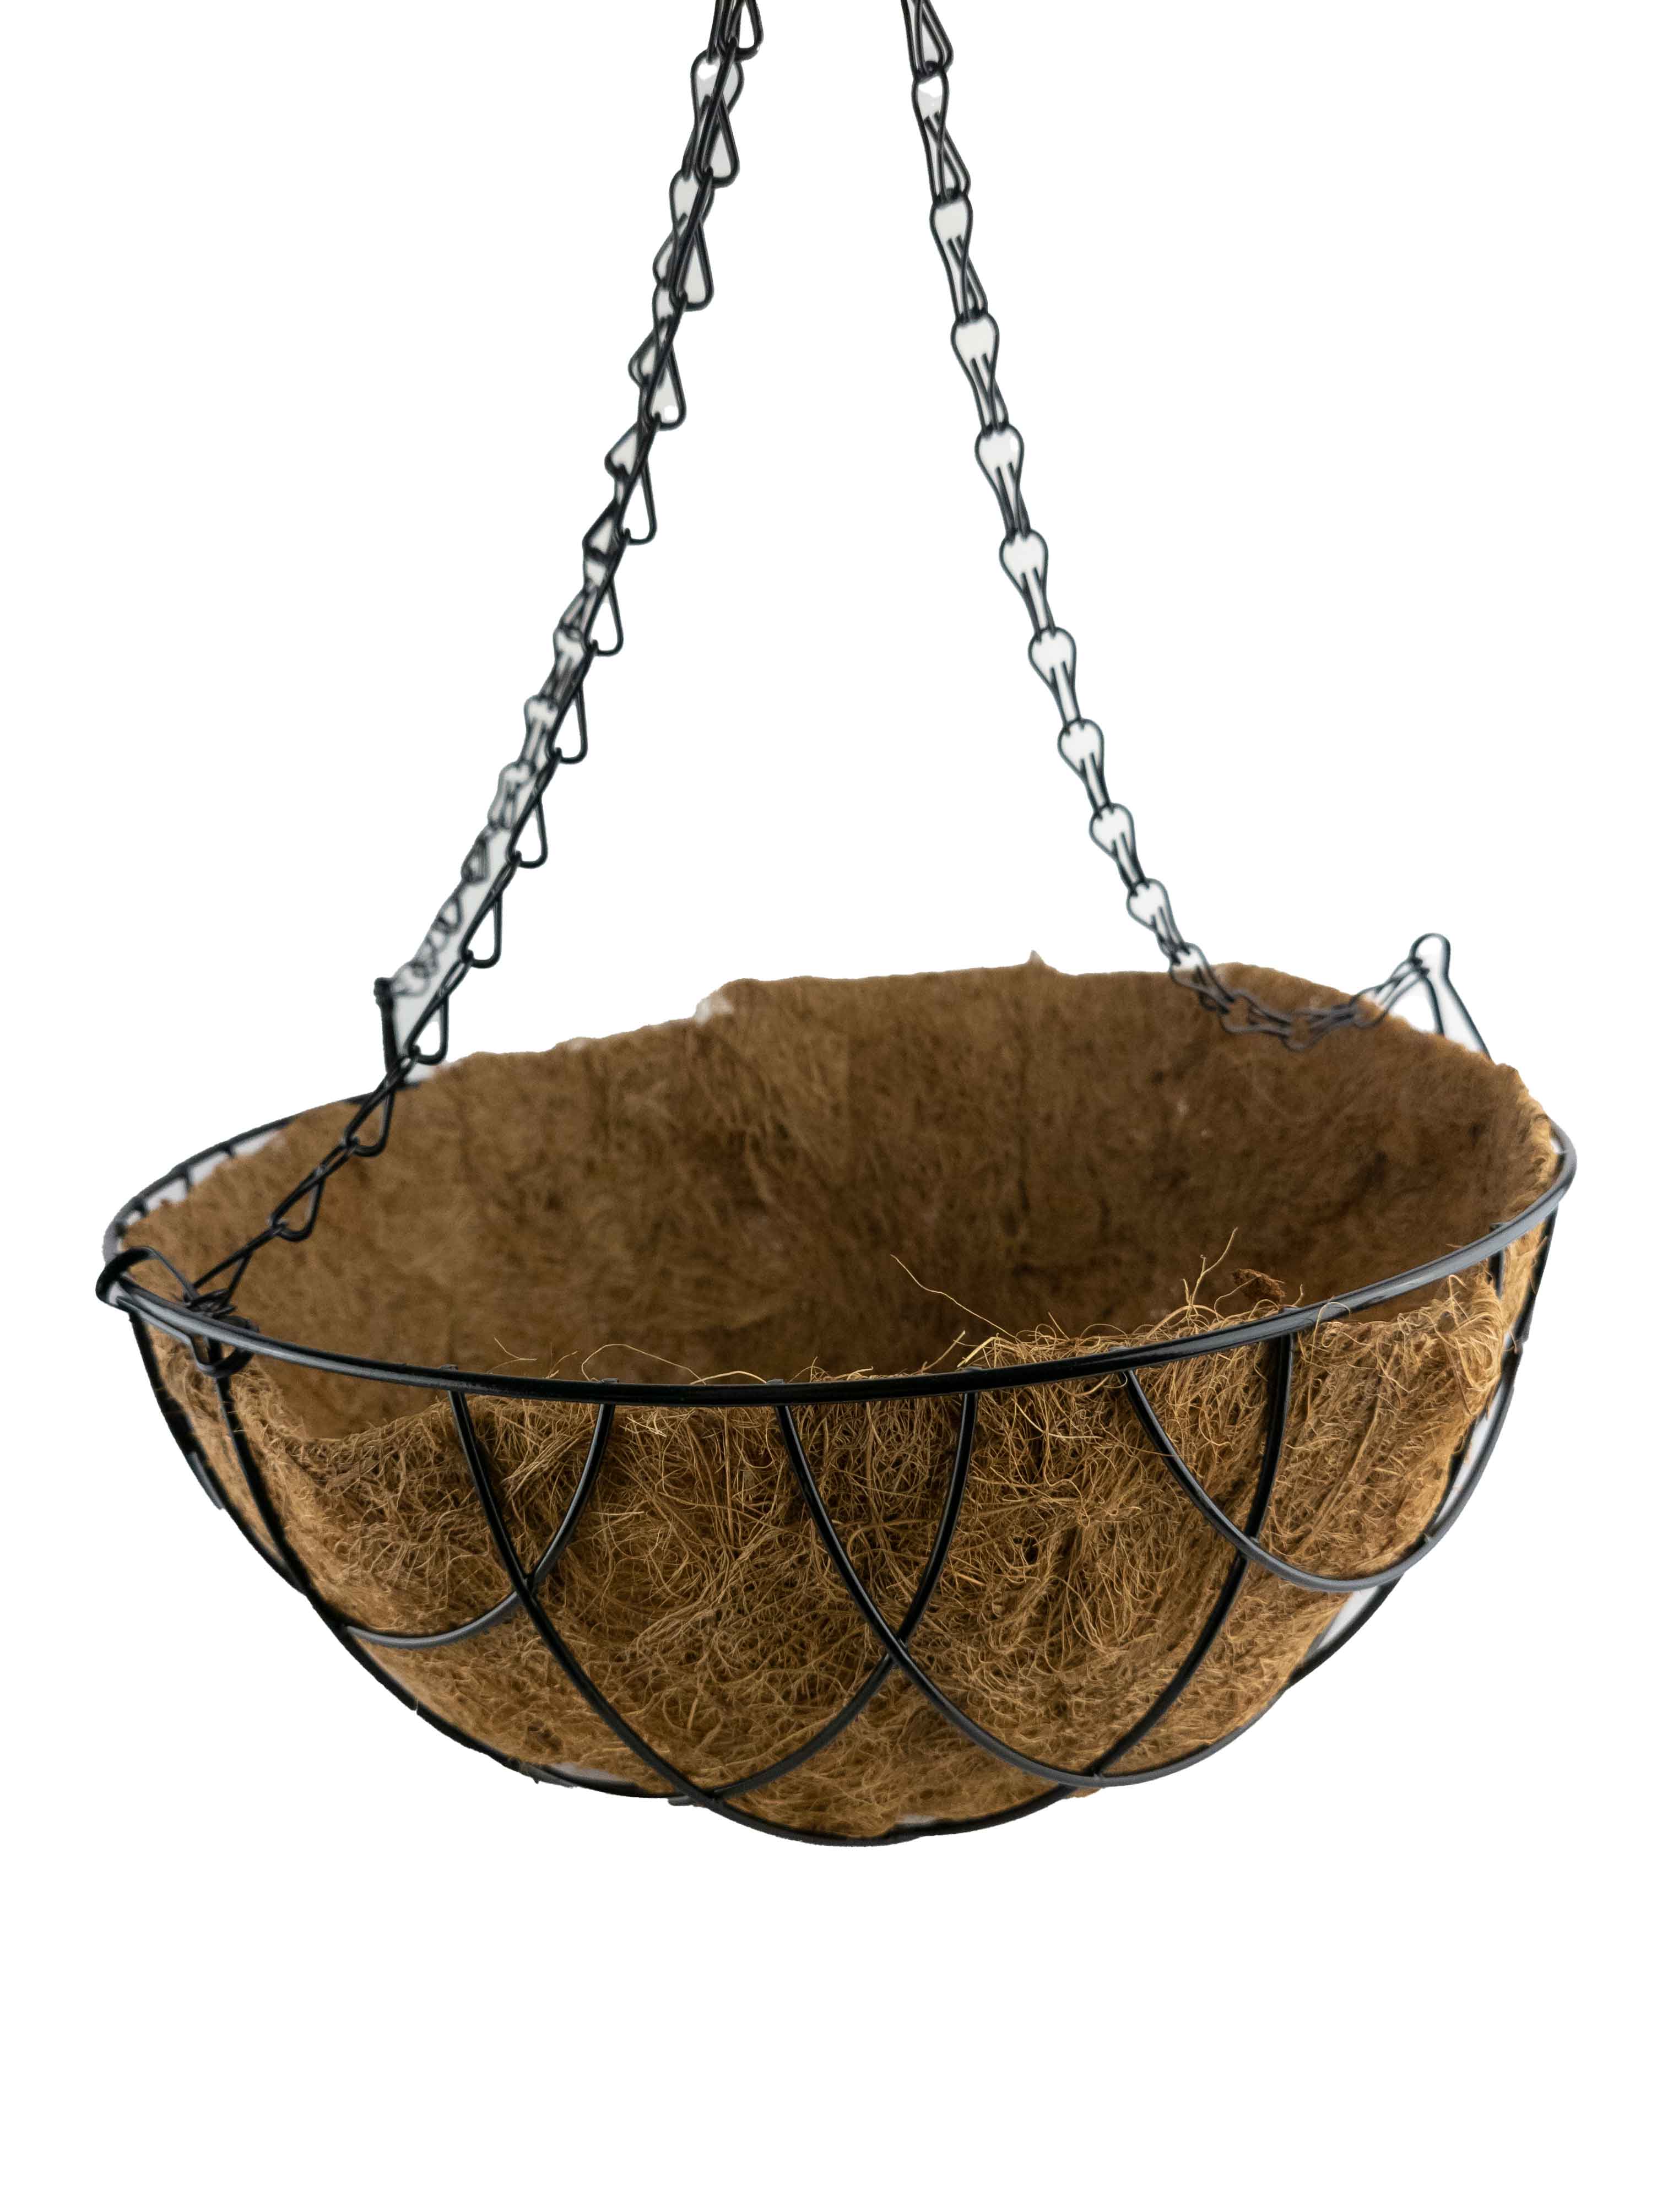 Black Diamond Hanging Basket, 12"